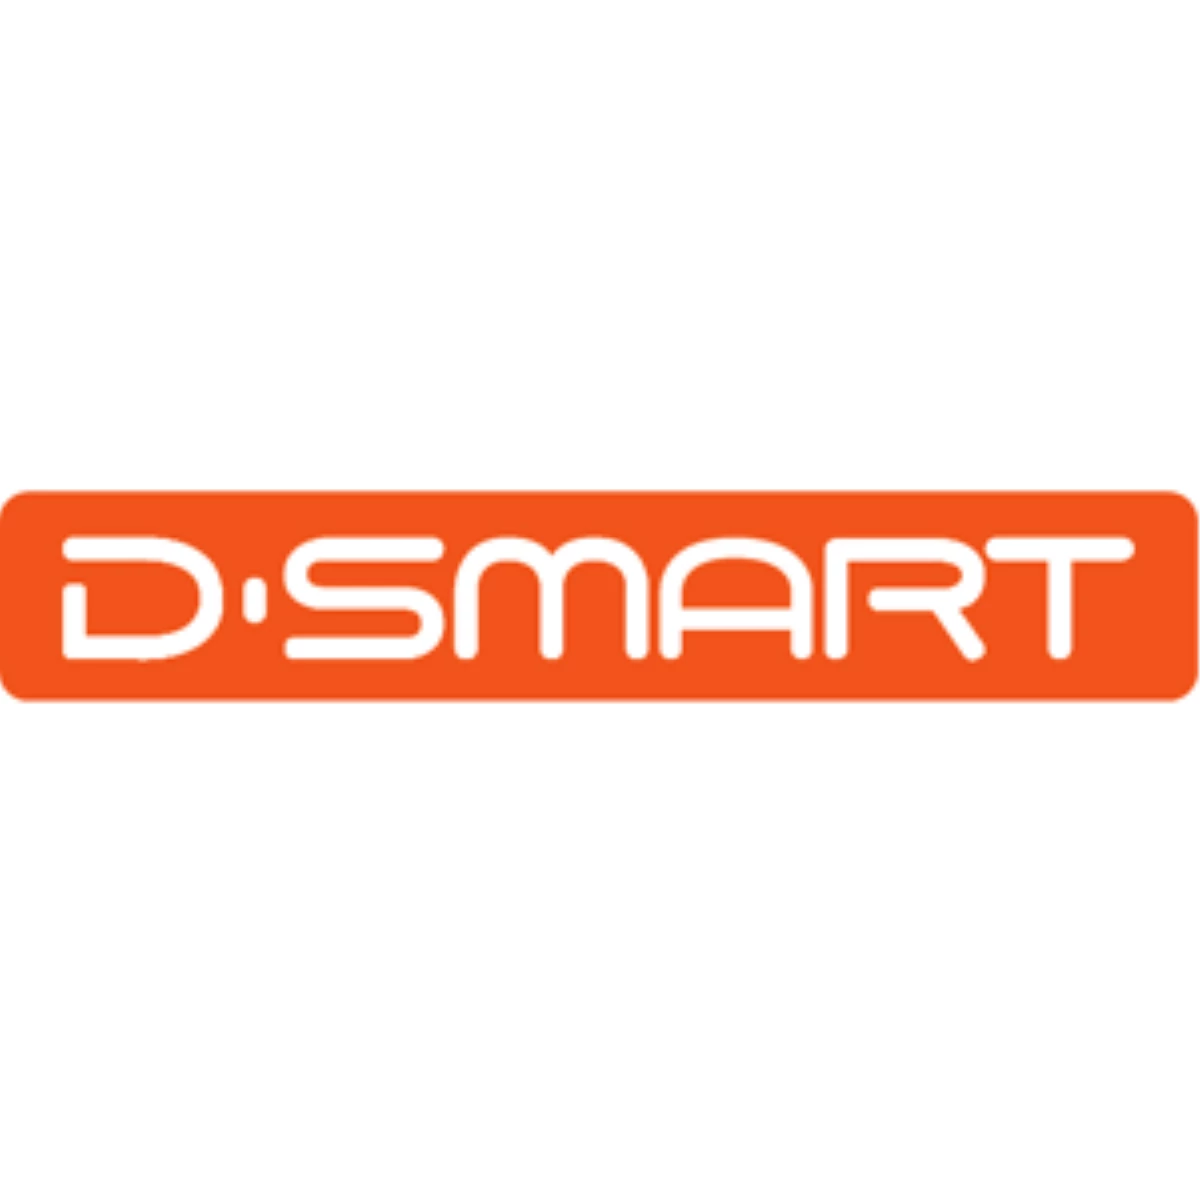 D-Smart, Yeni Kanallarıyla Tv Keyfini İkiye Katlıyor